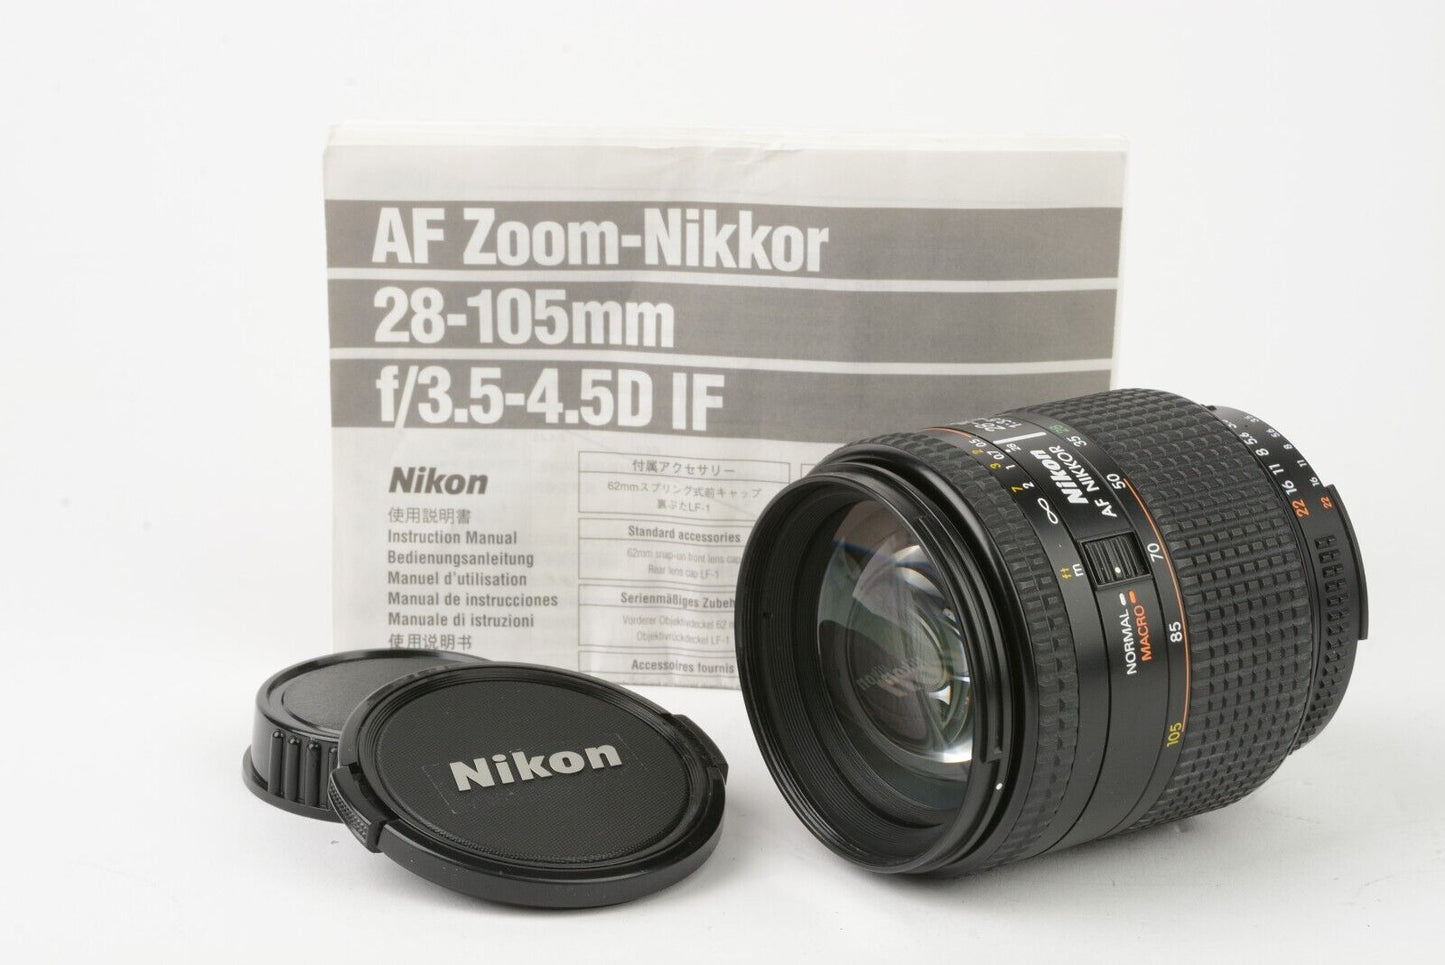 EXC++ NIKON AF NIKKOR 28-105mm f3.5-4.5D ZOOM LENS, CAPS+INSTRUCTIONS, NICE!